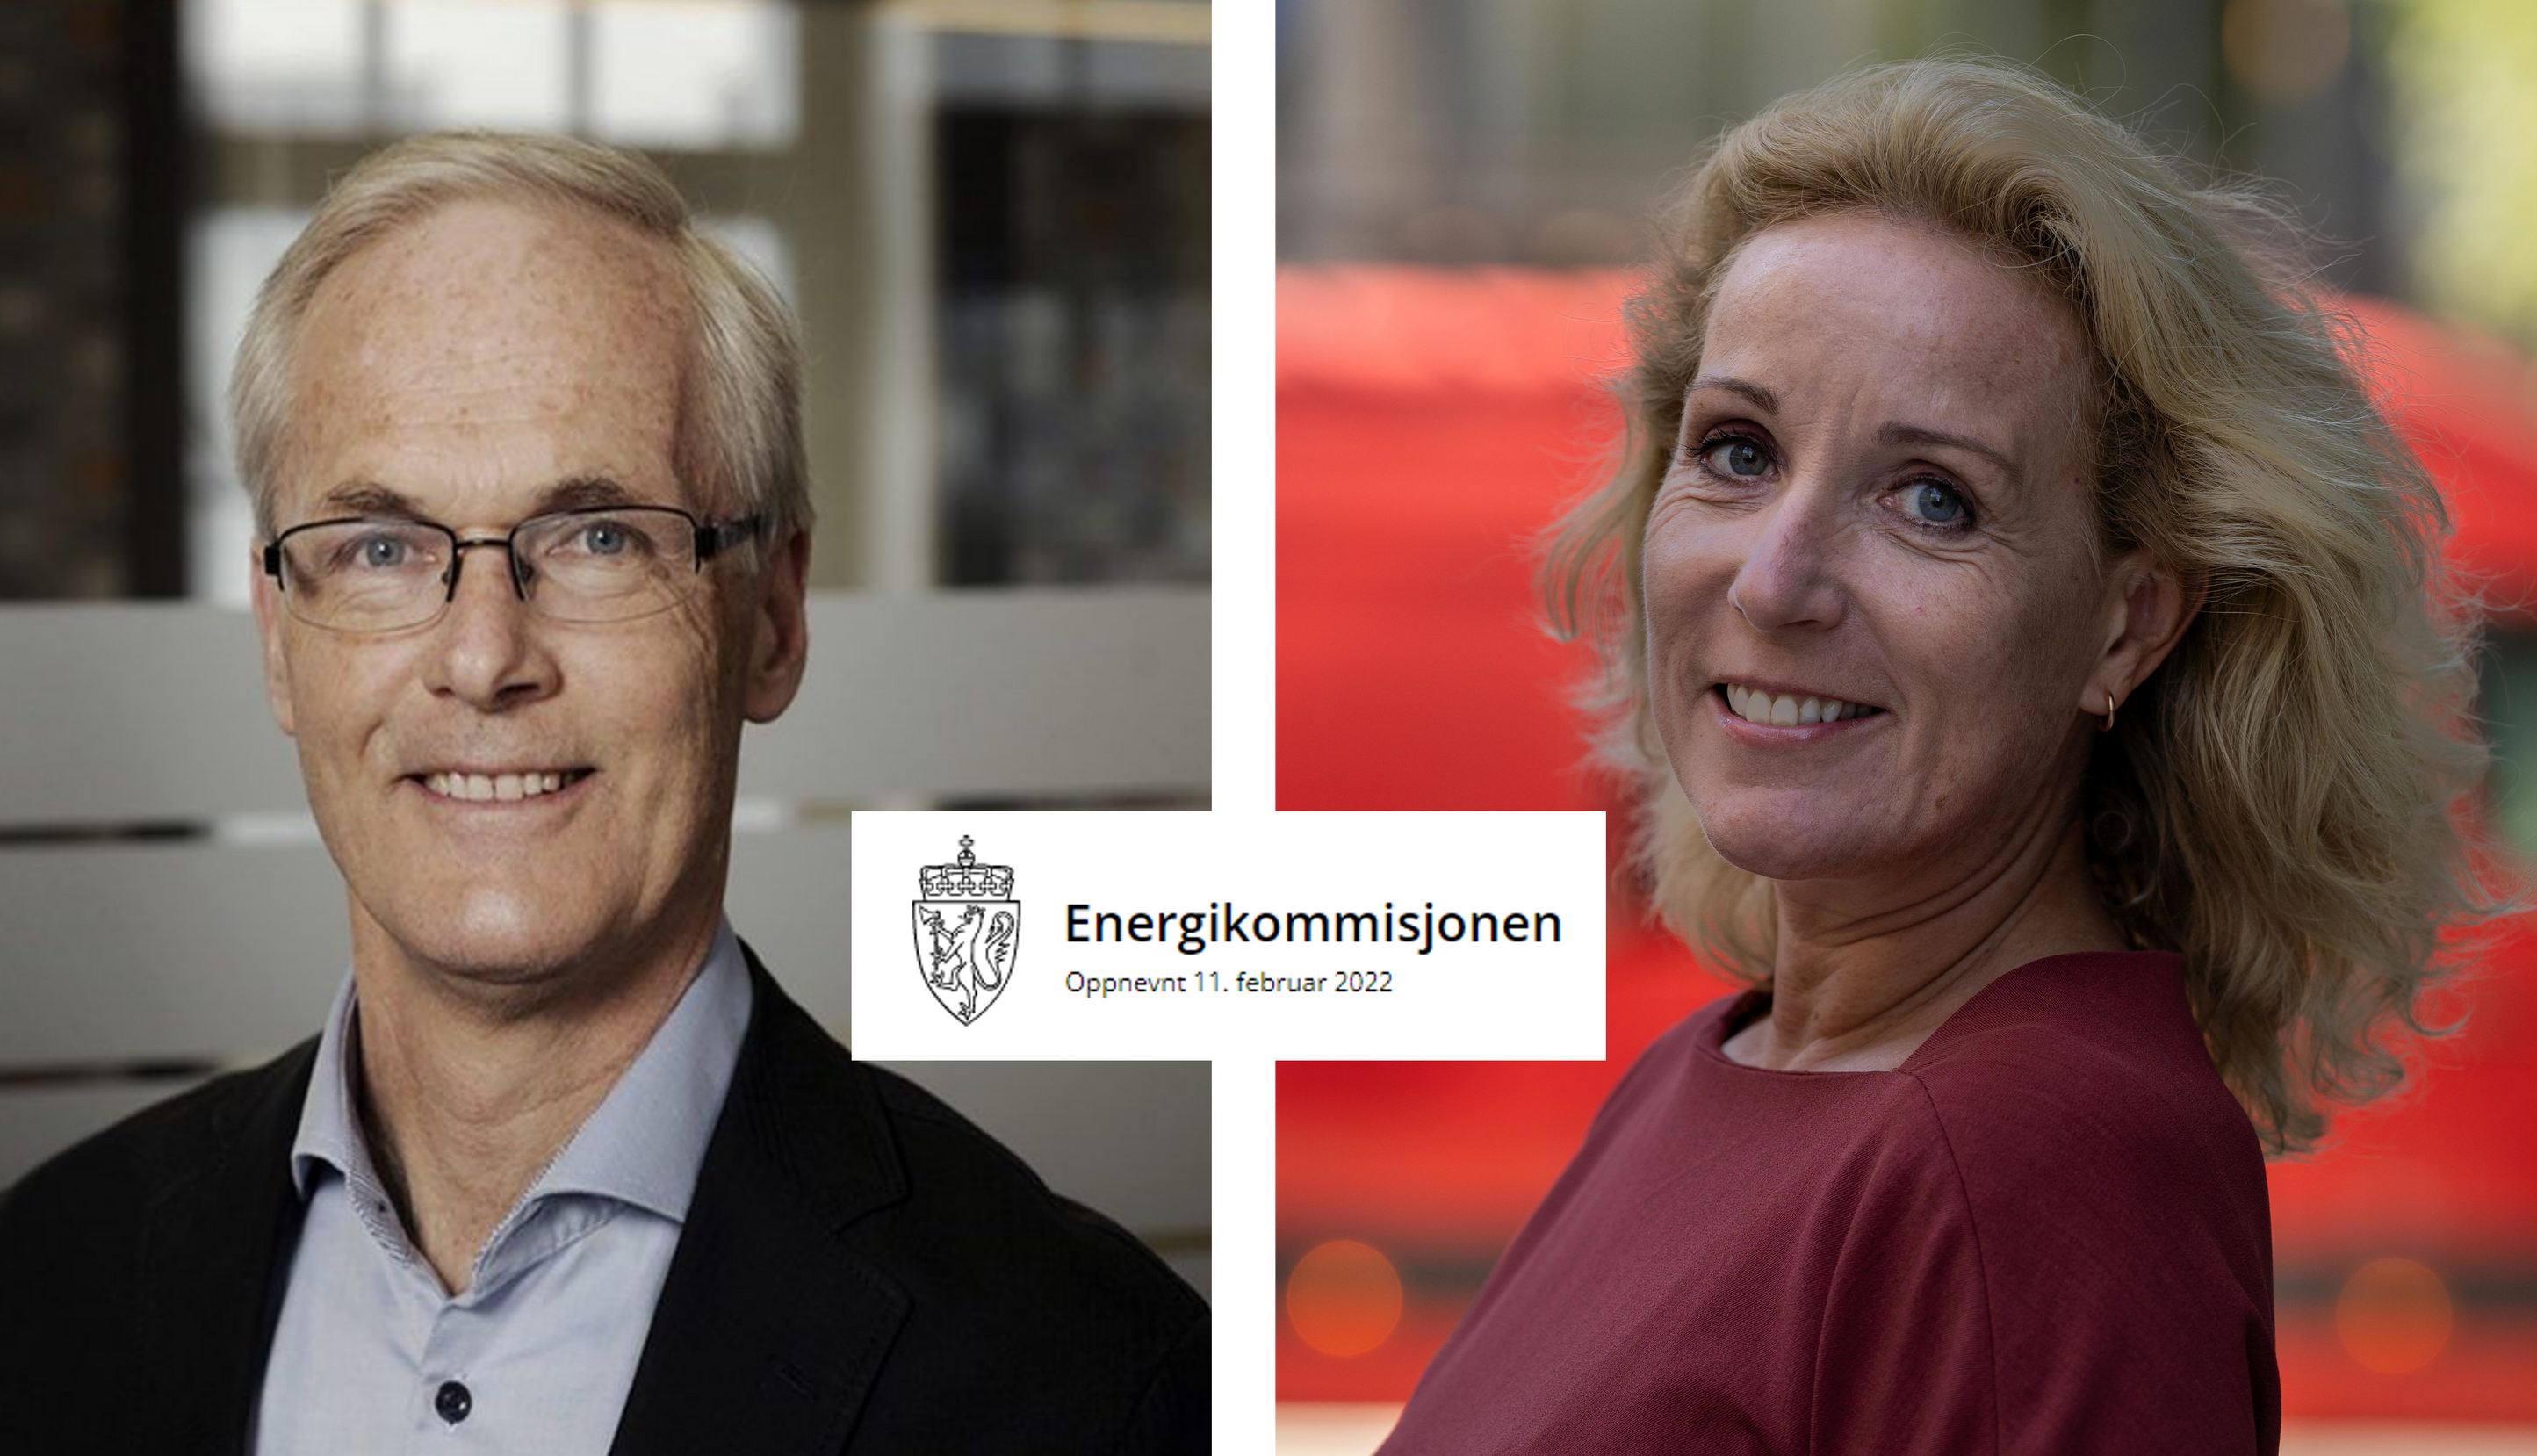 Motasje av Lars Sørgard, Cecilie Bjelland og Energikommisjonens logo.